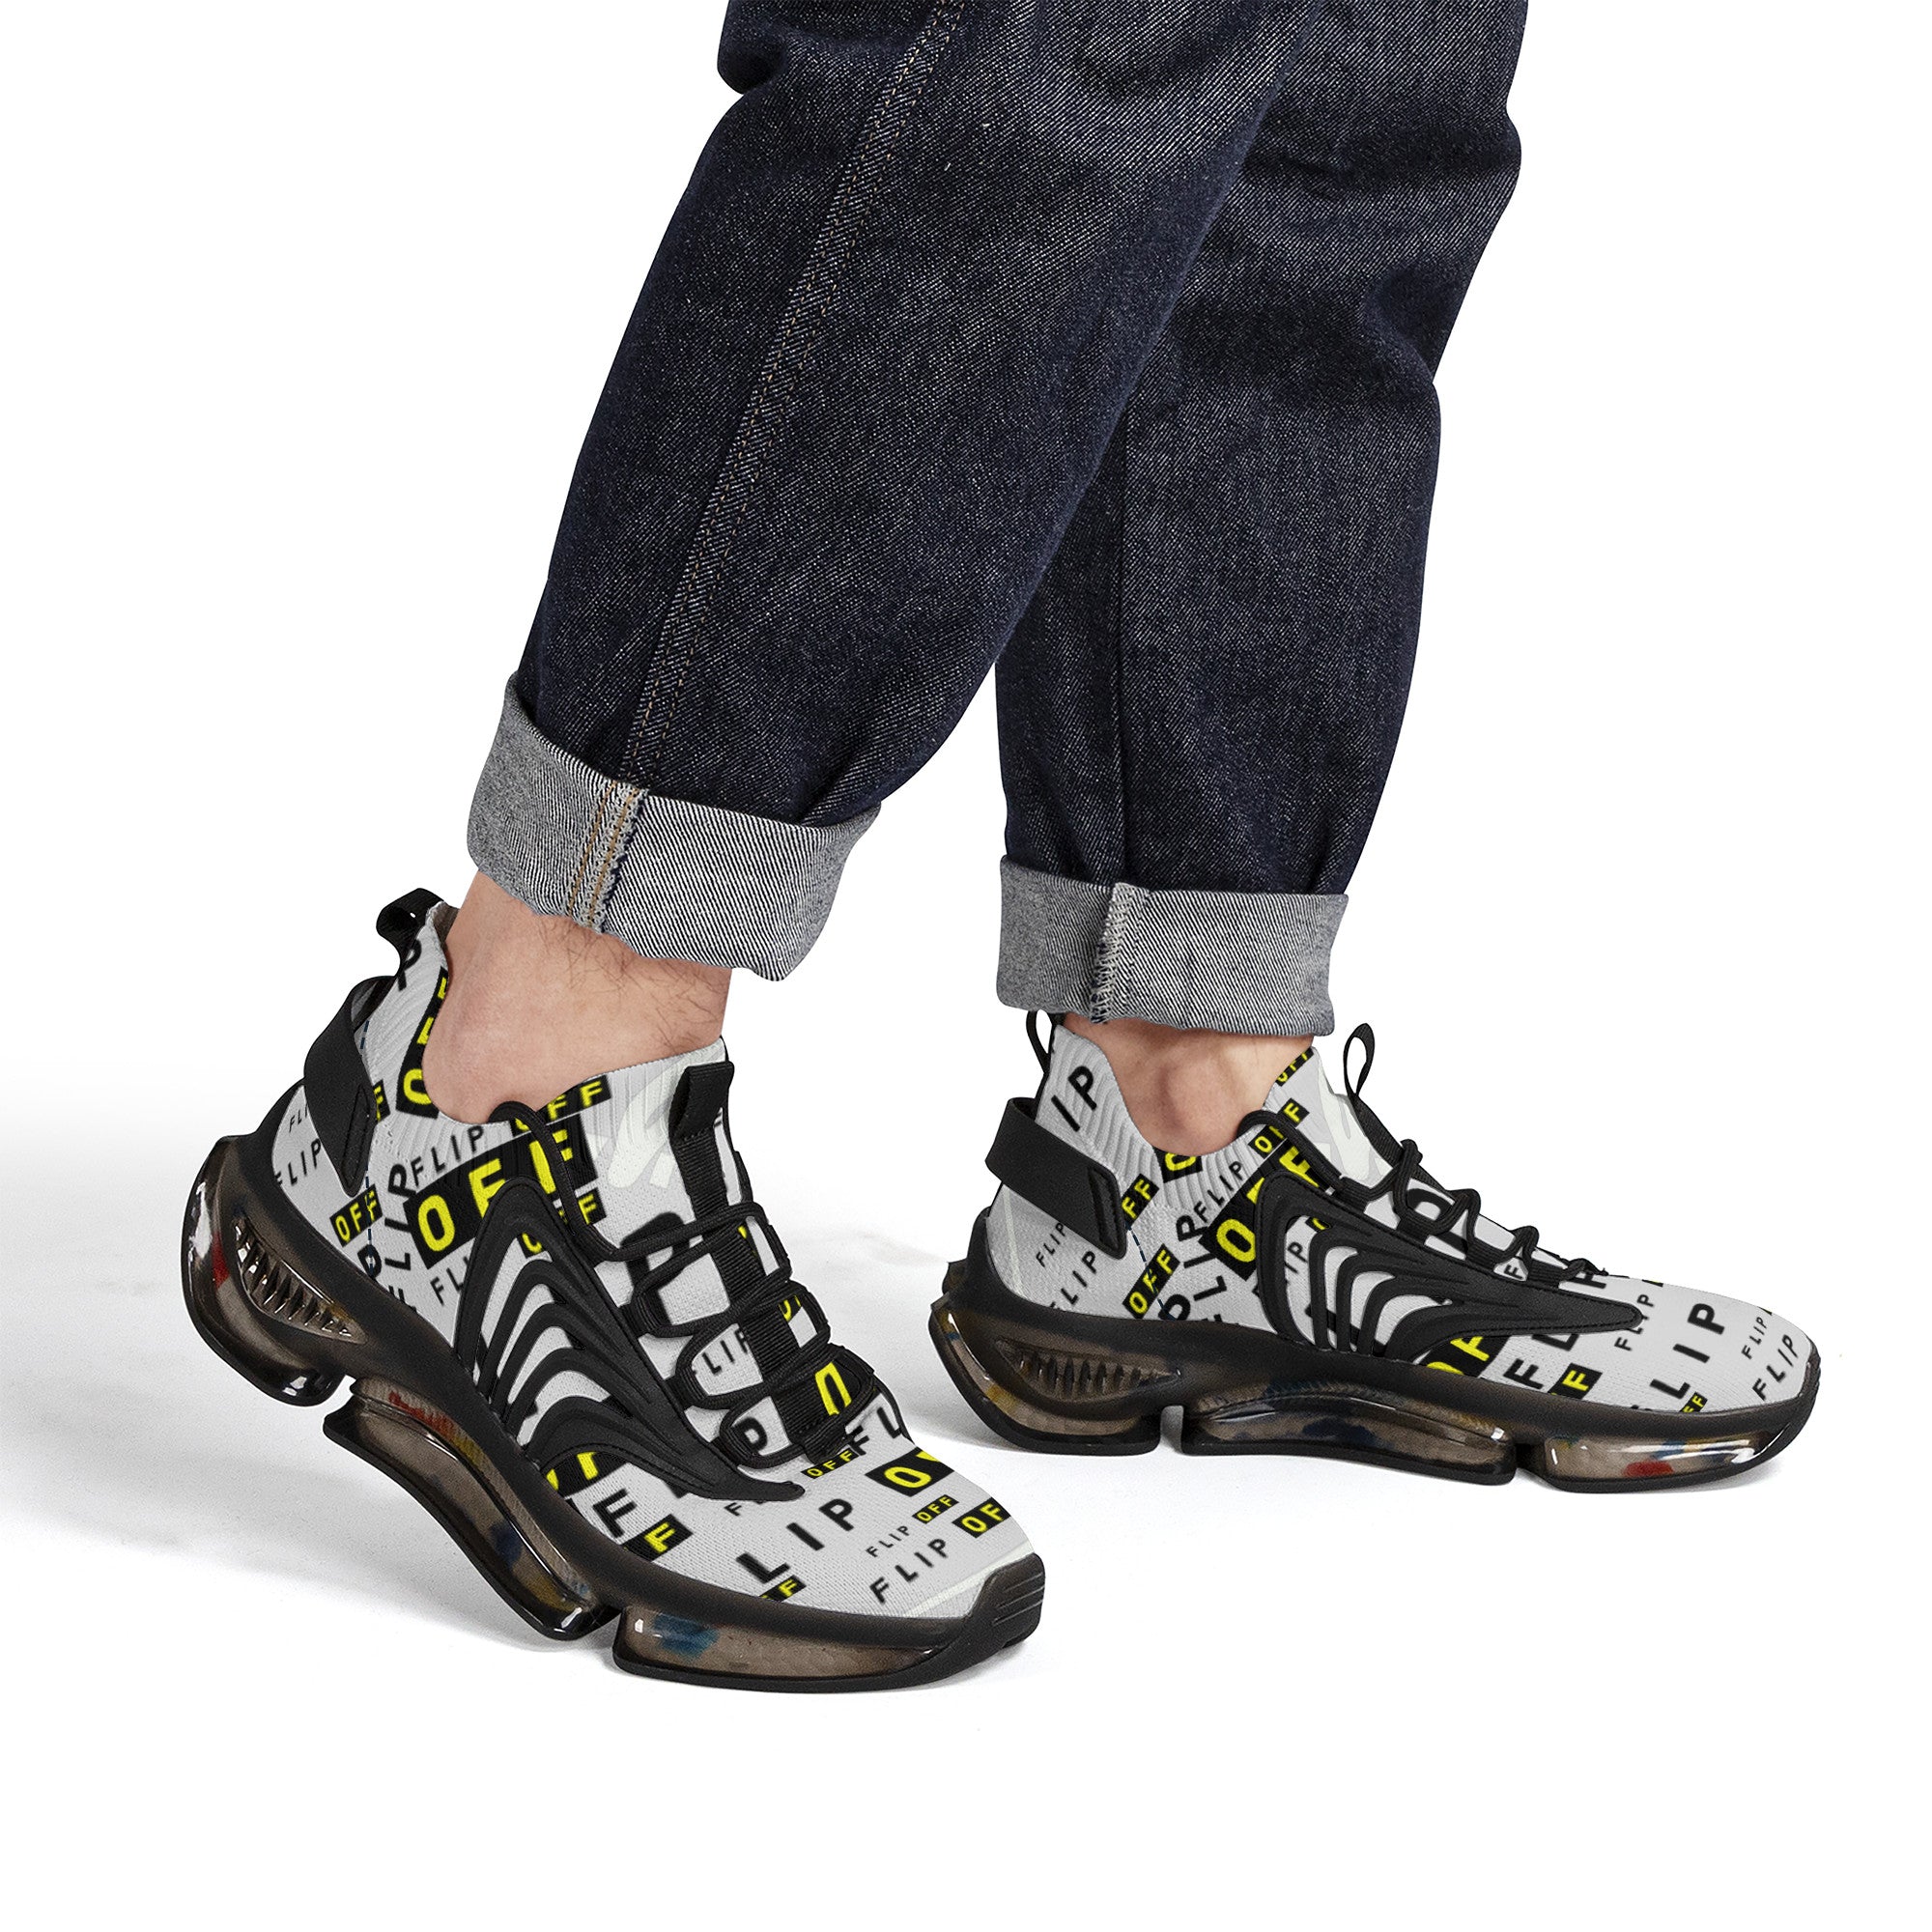 Cool shoes by David Figueroa | High Top Customized | Shoe Zero